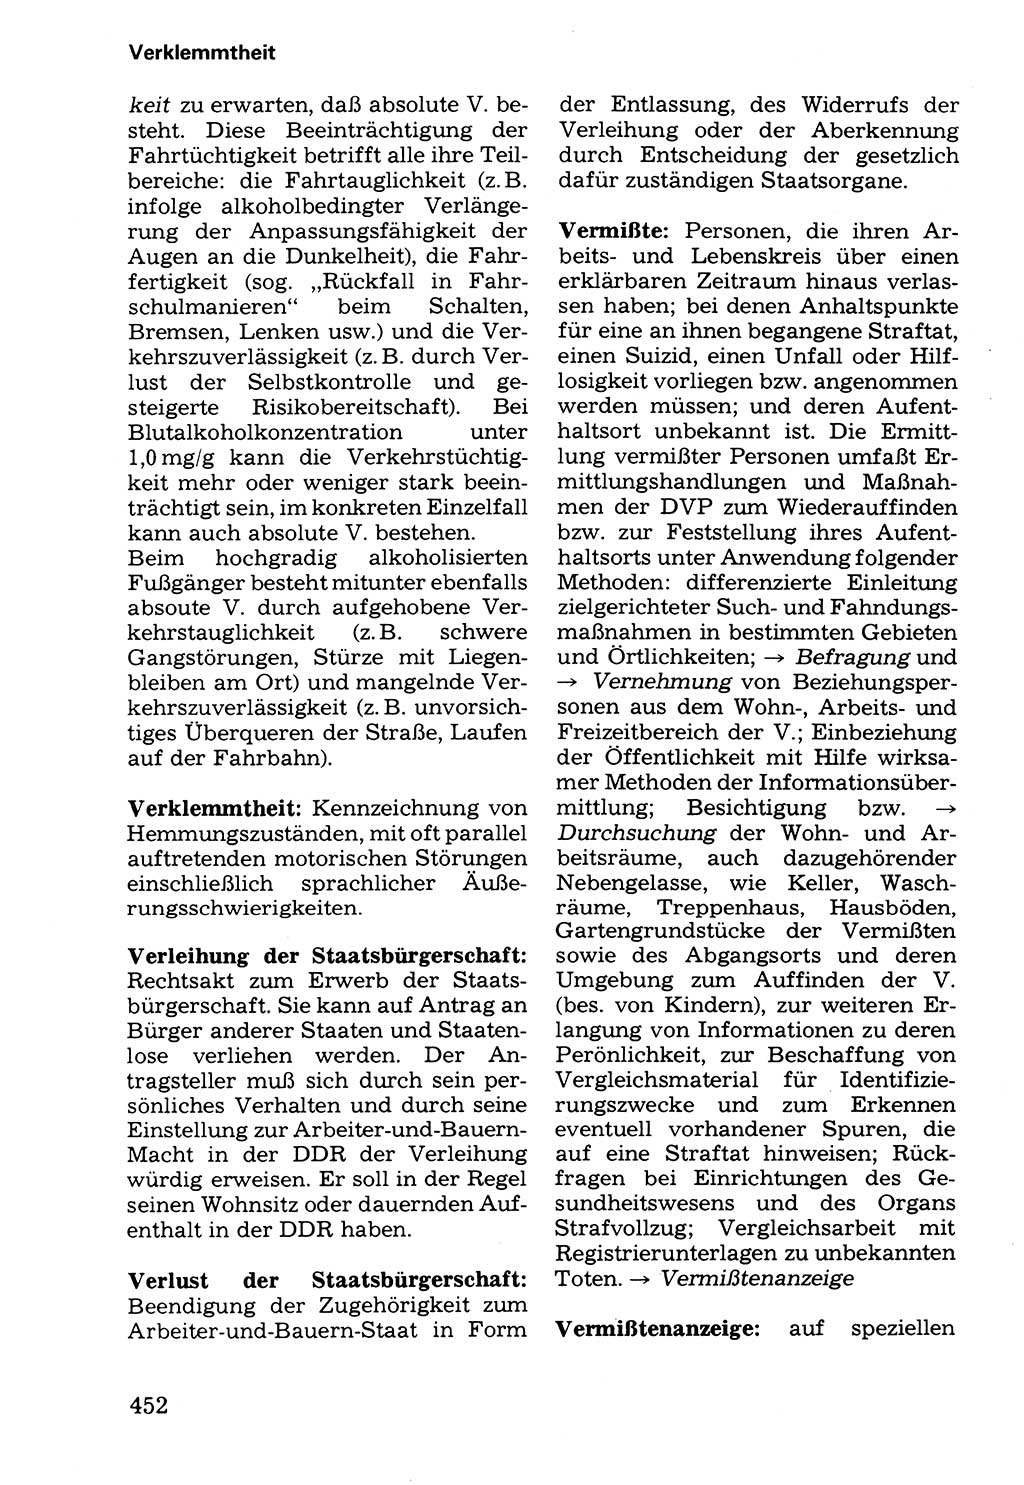 Wörterbuch der sozialistischen Kriminalistik [Deutsche Demokratische Republik (DDR)] 1981, Seite 452 (Wb. soz. Krim. DDR 1981, S. 452)